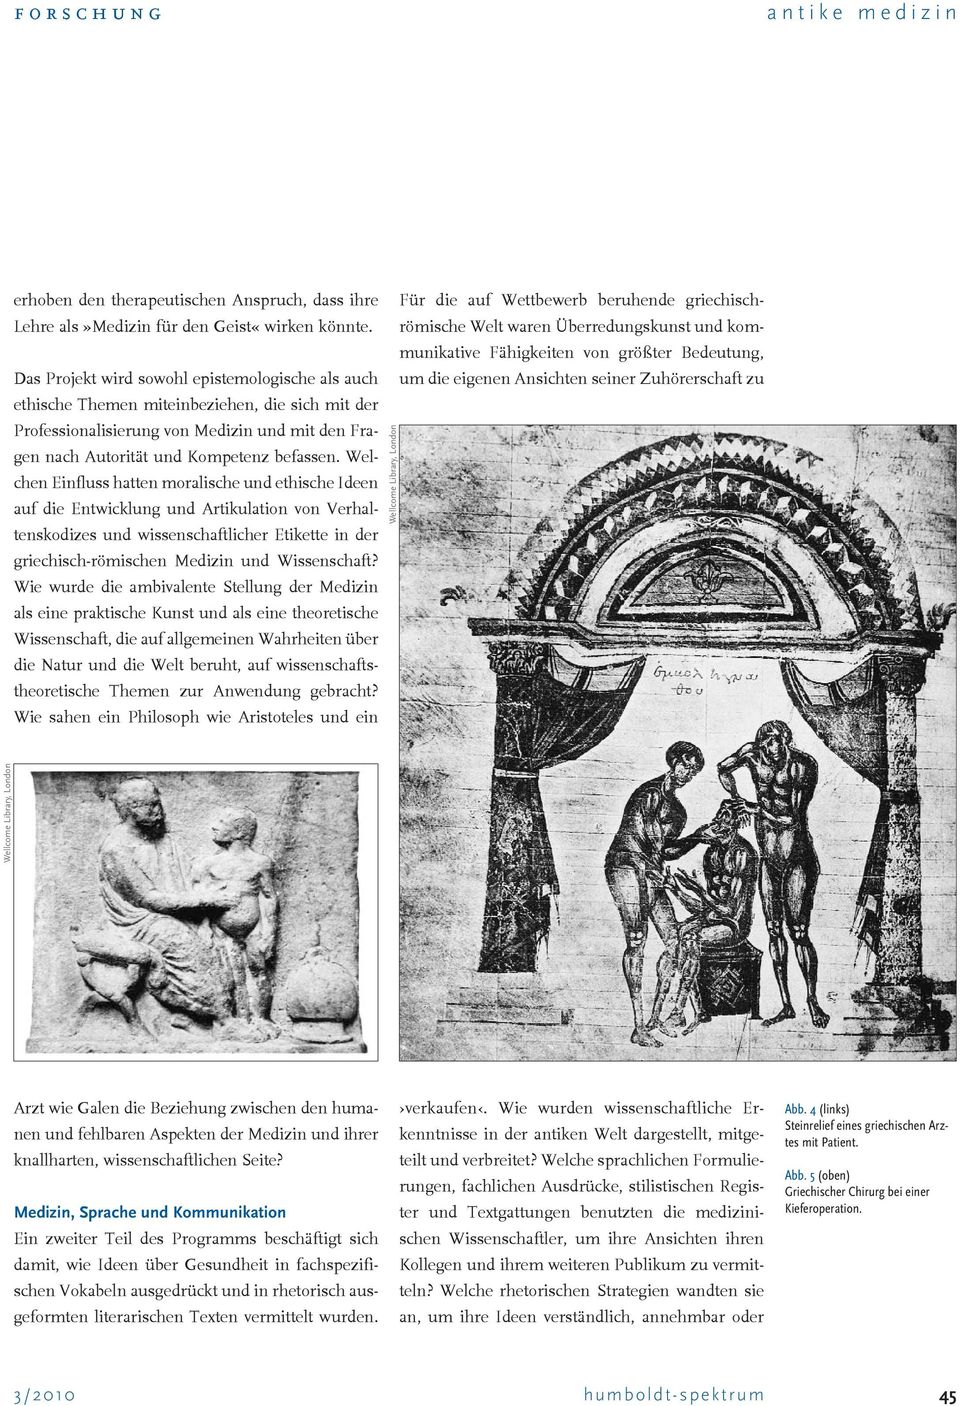 Welchen Einfluss hatten moralische und ethische Ideen auf die Entwicklung und Artikulation von Verhaltenskodizes und wissenschaftlicher Etikette in der griechisch-römischen Medizin und Wissenschaft?